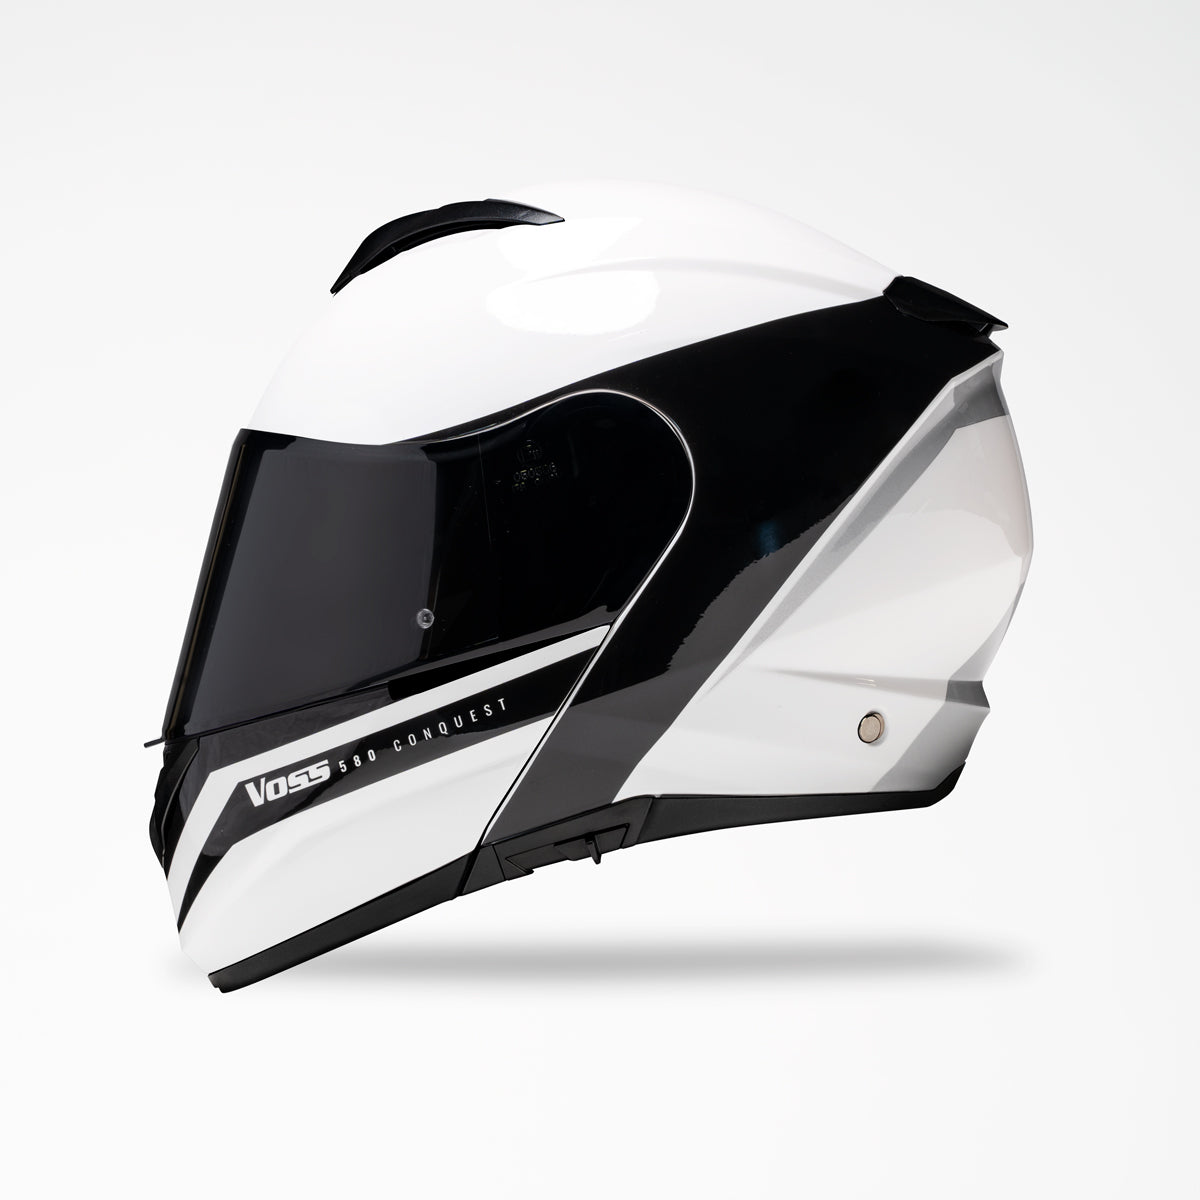 VOSS 580 CONQUEST WHITE FLUID HELMET - Voss Helmets